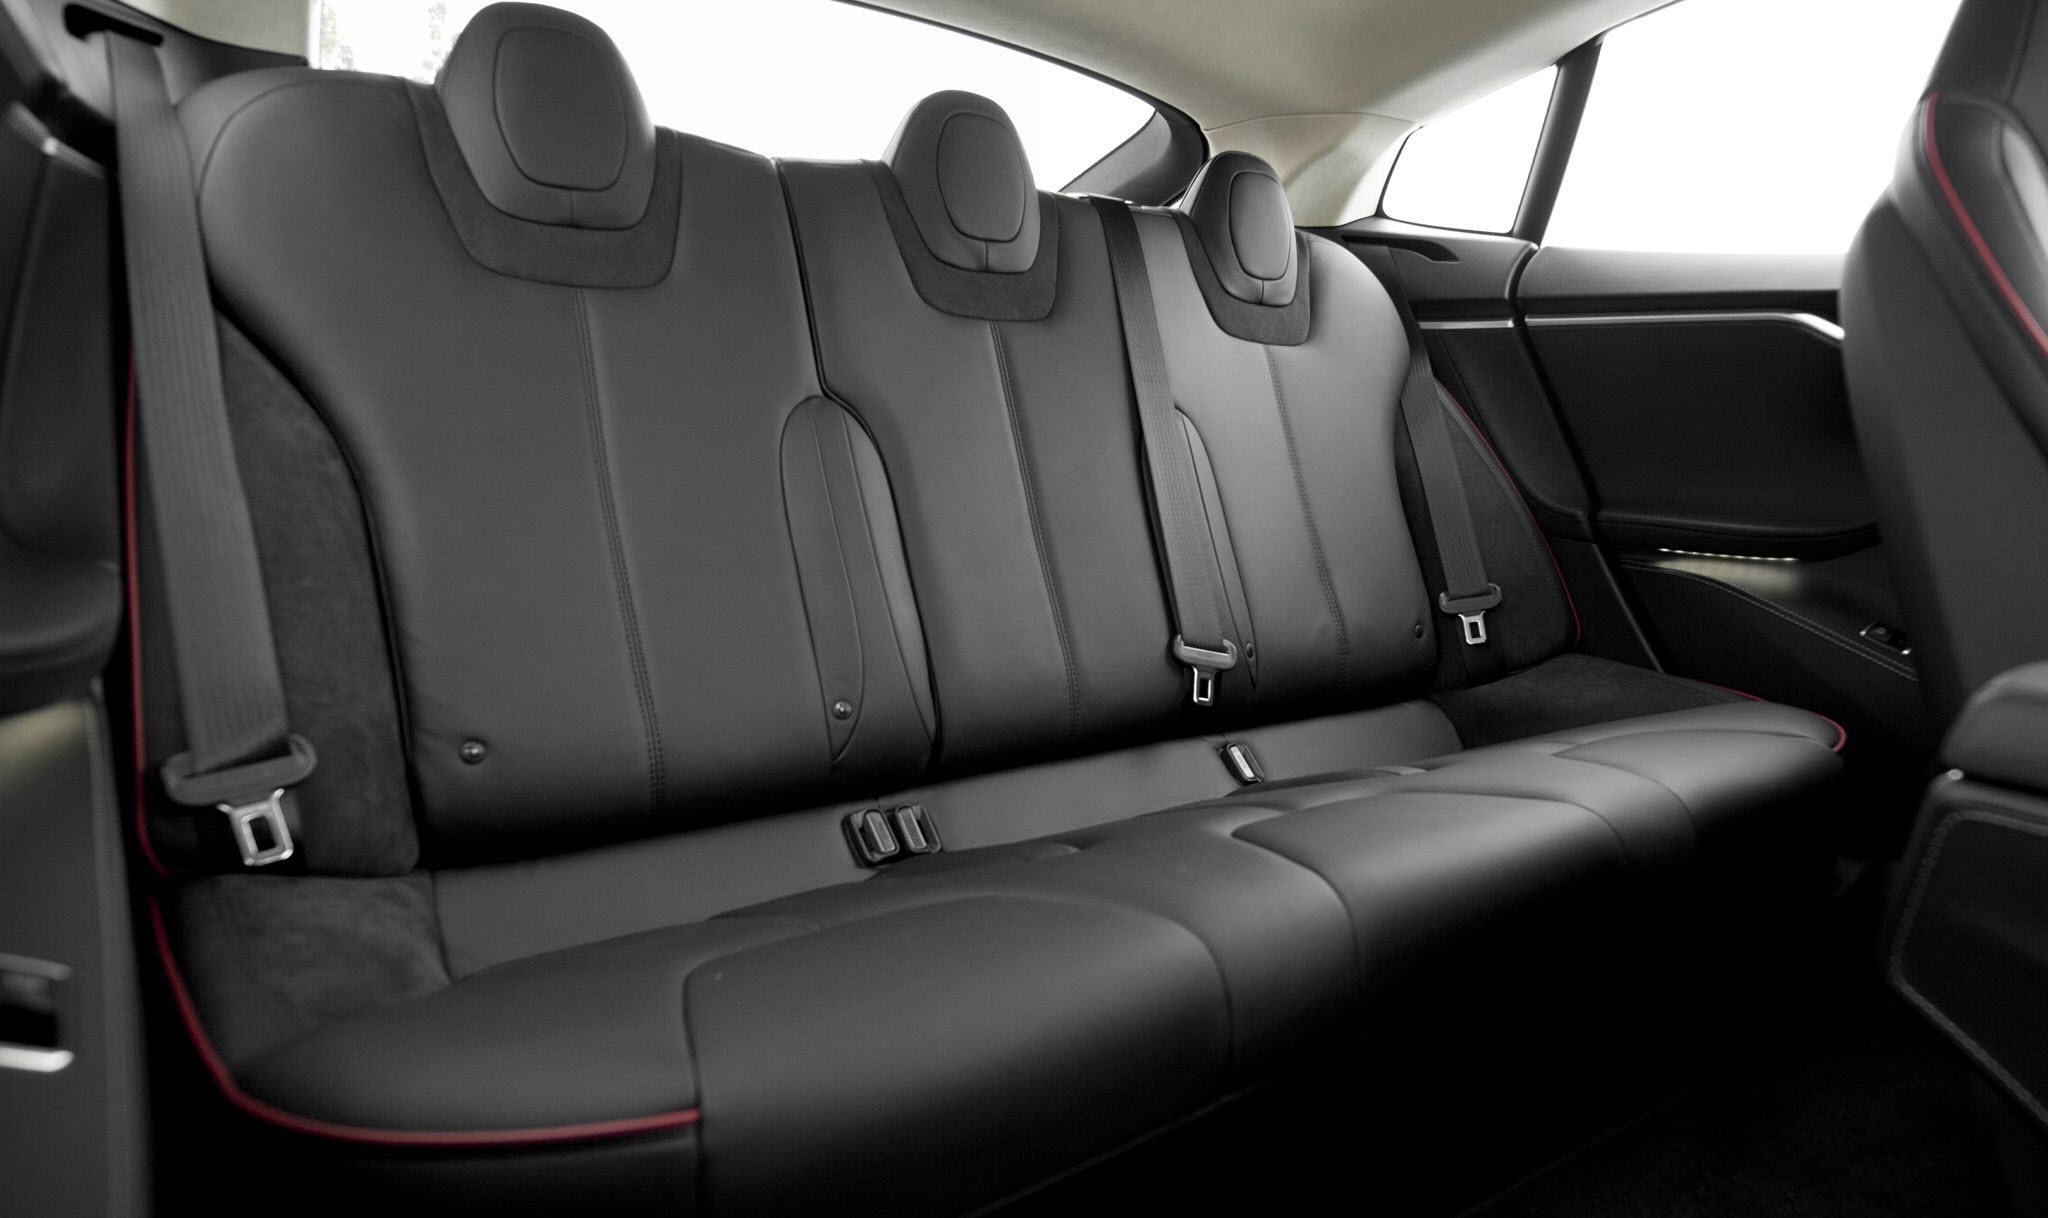 Tesla Model S rear seats